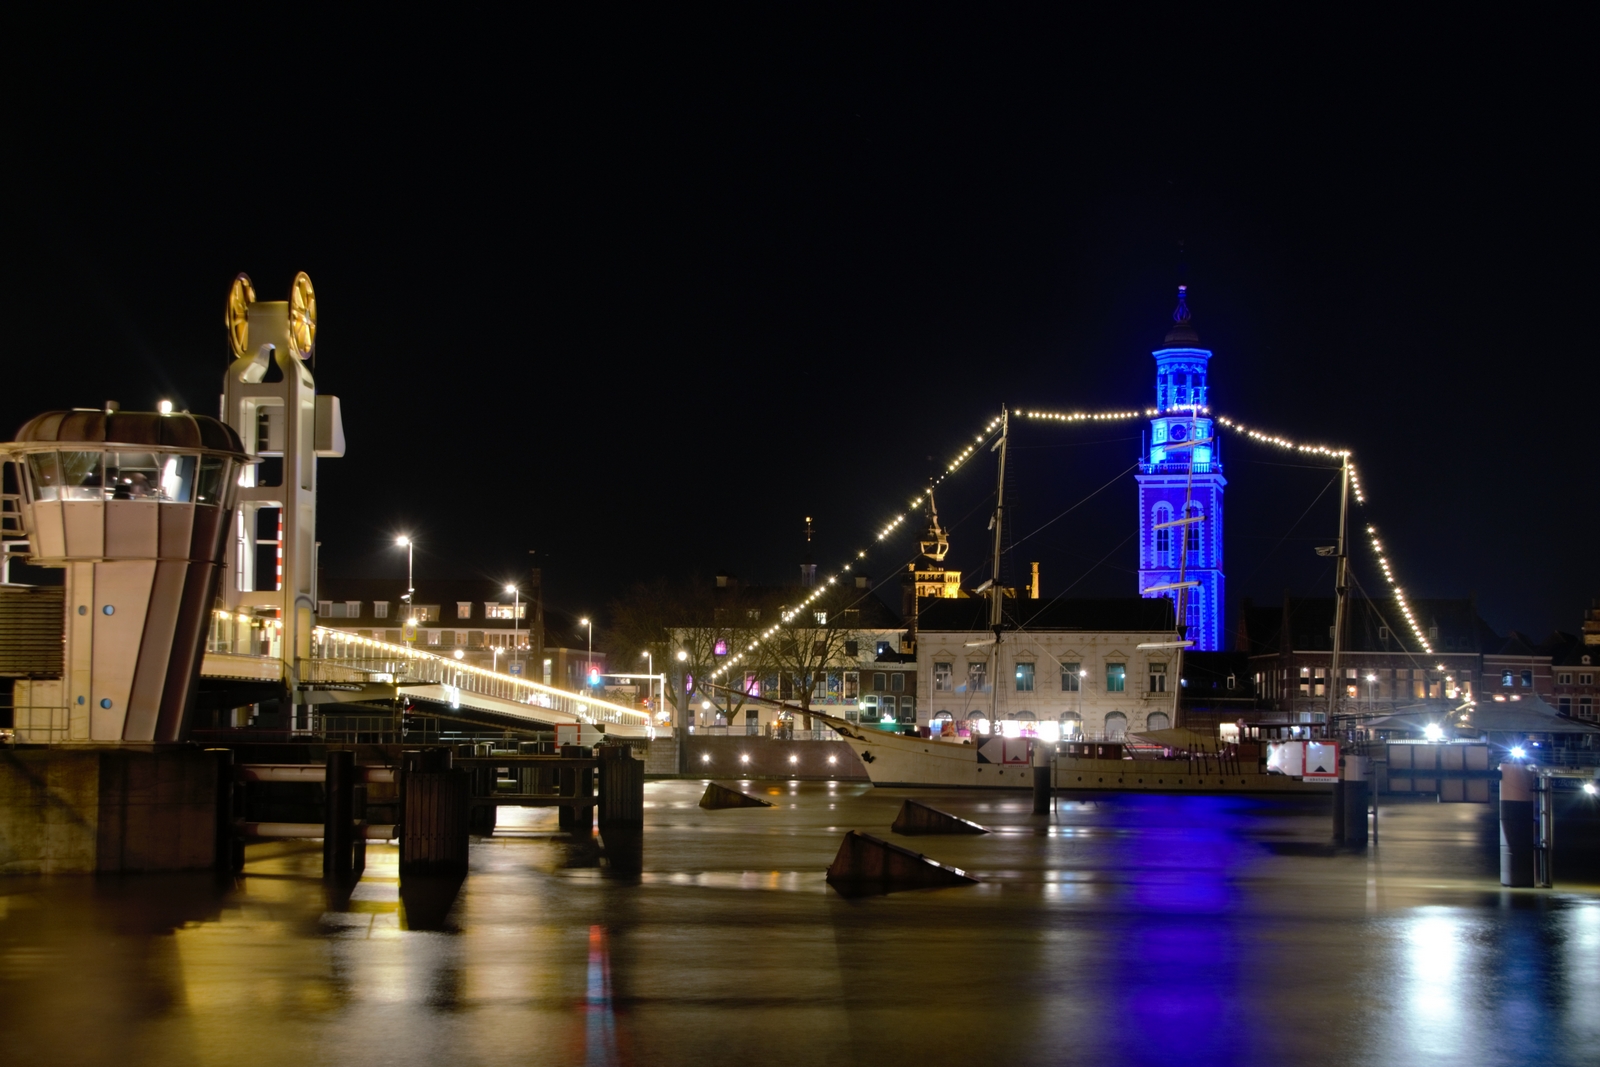 Stadsbrug en Nieuwe Toren in kleuren vlag Oekraïne